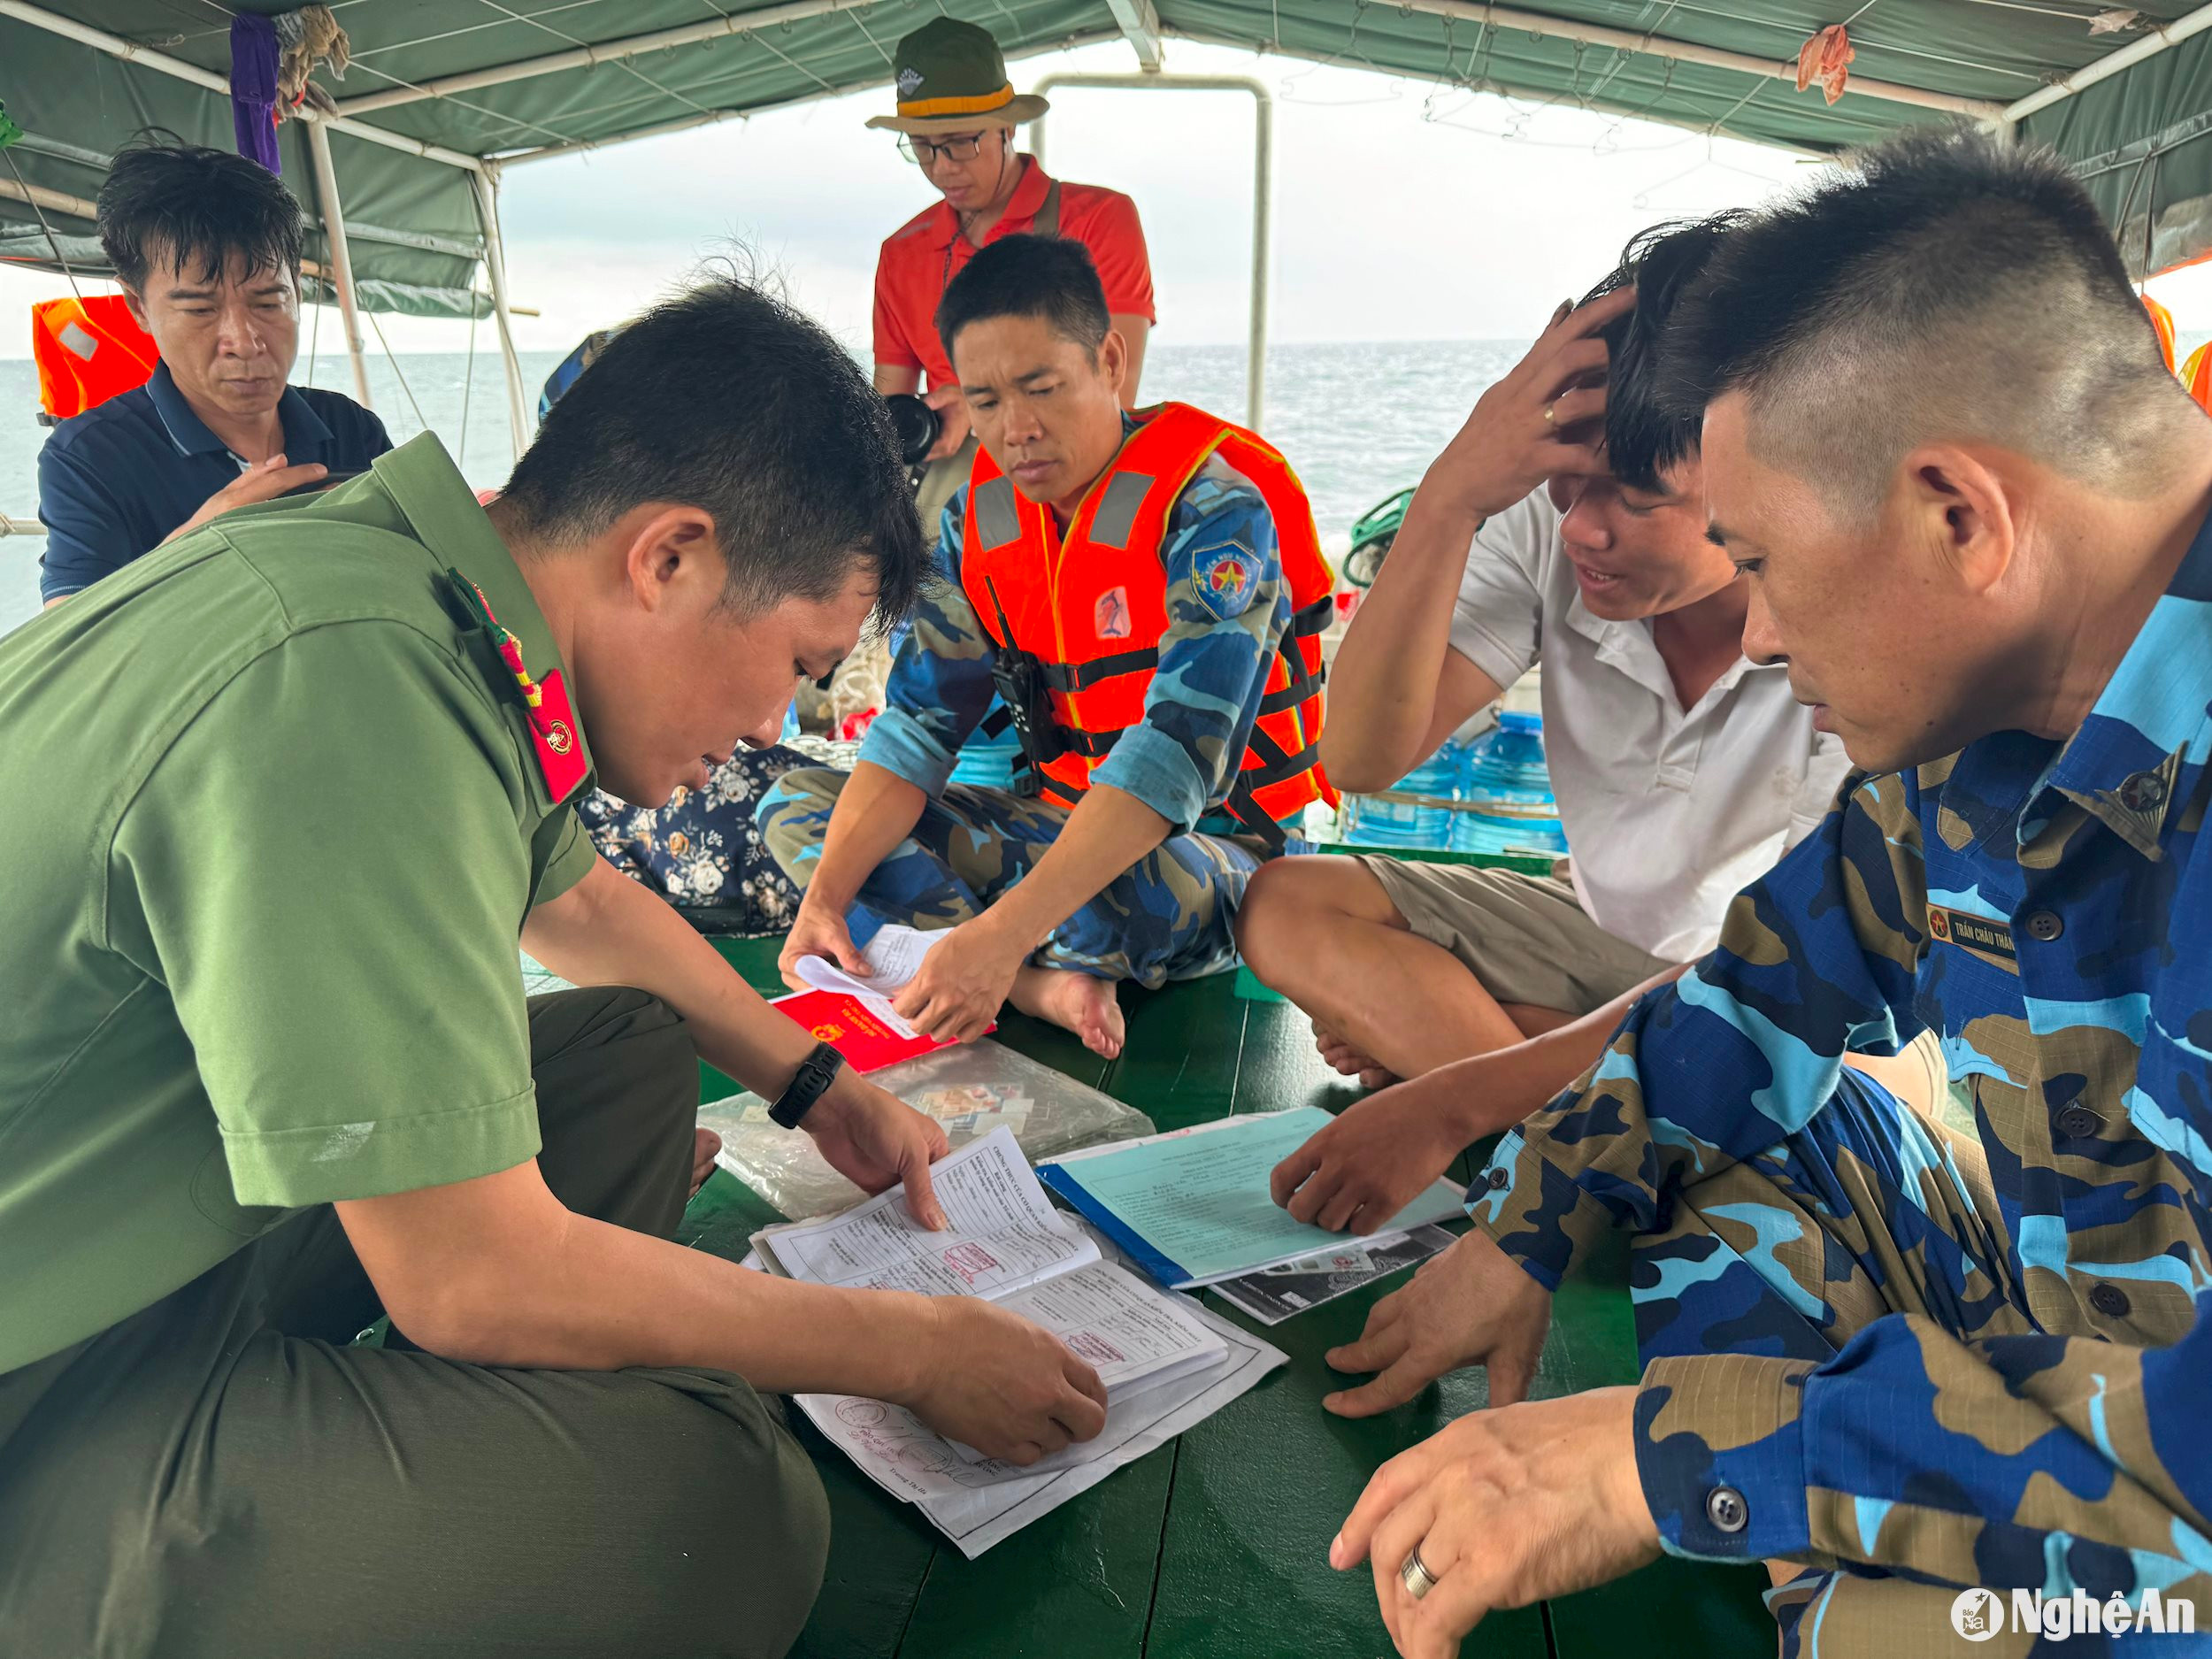  Đoàn liên ngành kiểm tra ven biển tuyên truyền 1 chủ tàu cá vi phạm khi đánh bắt 